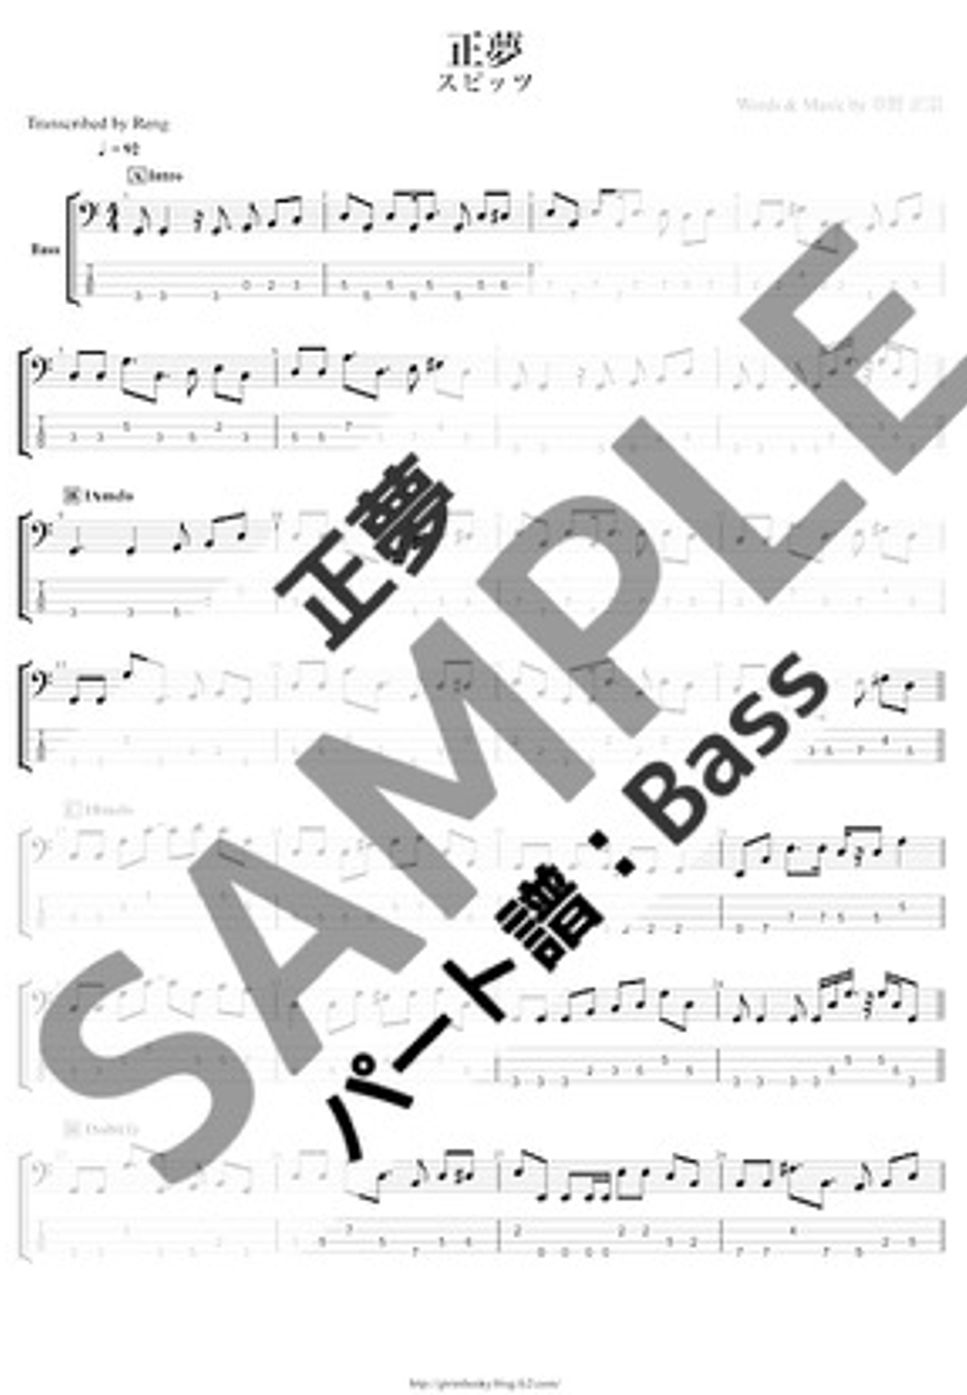 スピッツ - 正夢 (Bass/TAB譜) by Score by Reng